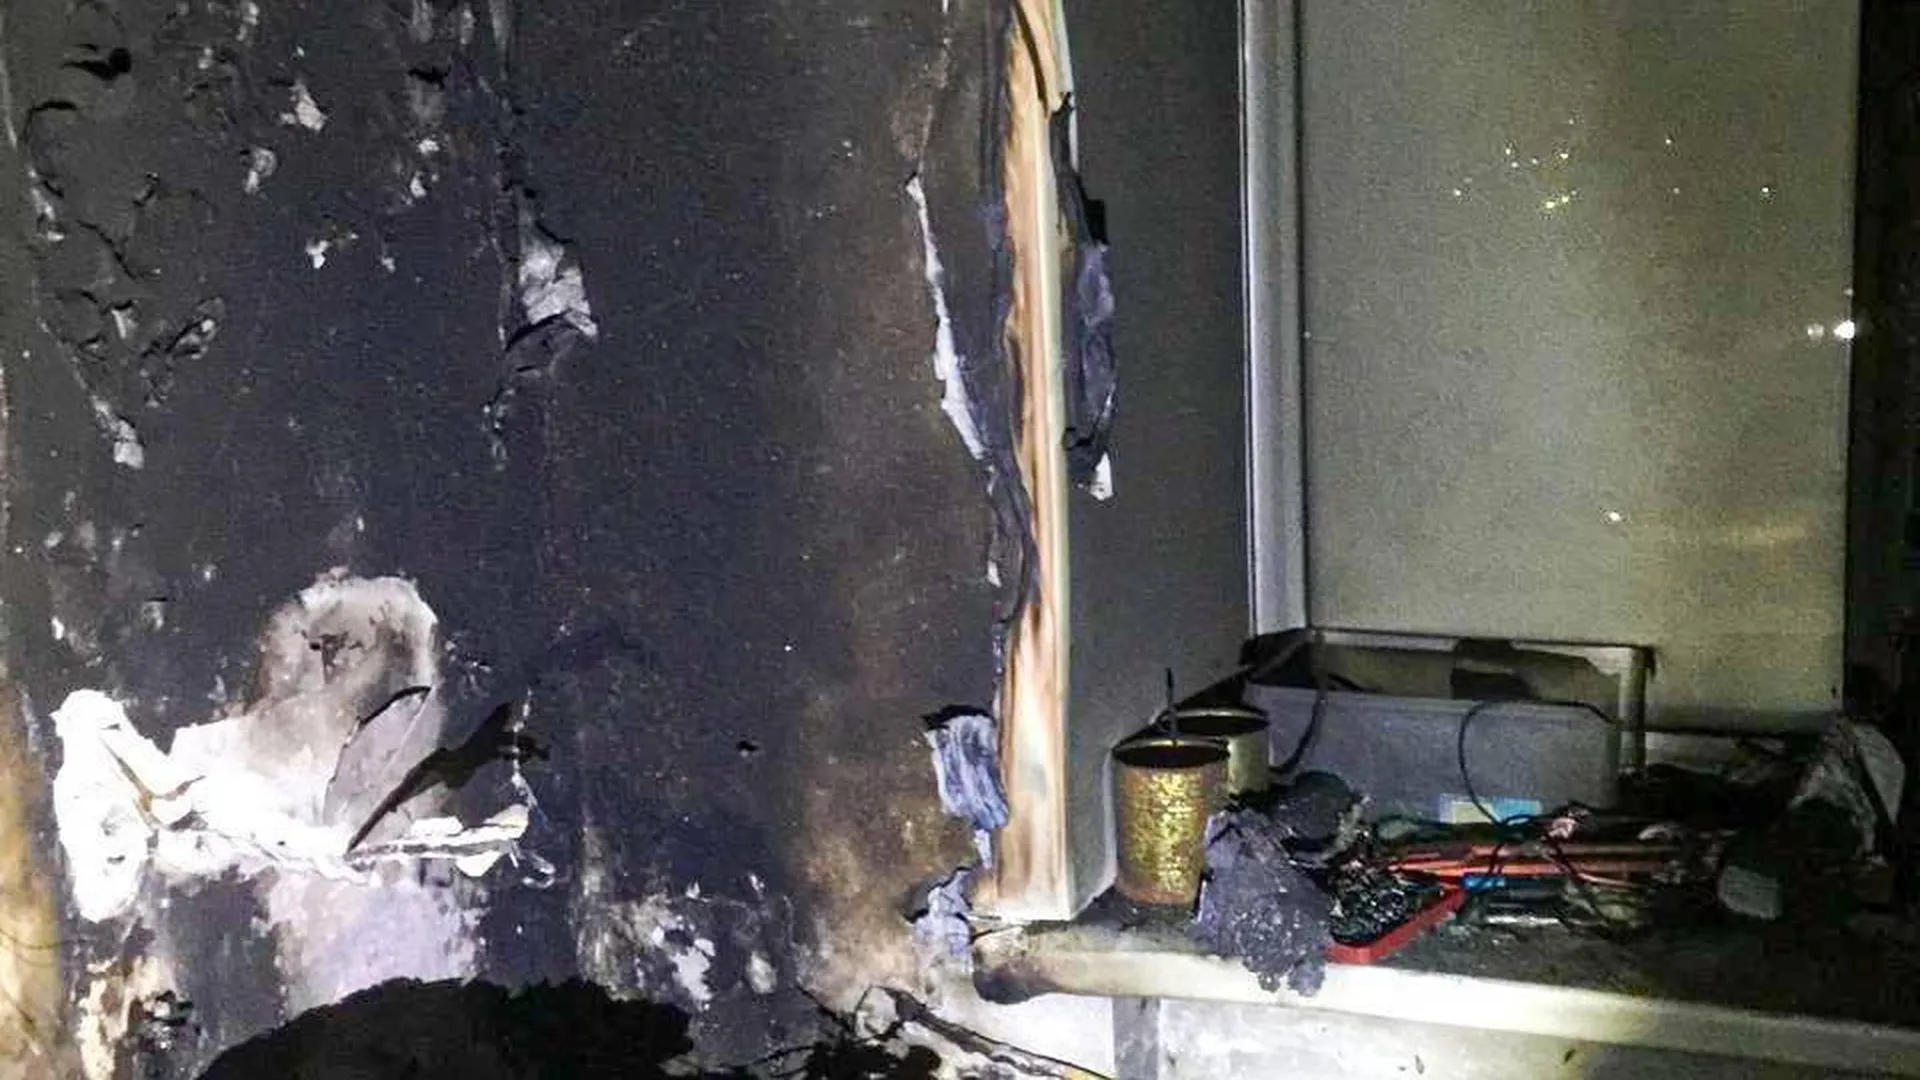 Квартира загорелась в Перми из-за включенной гирлянды